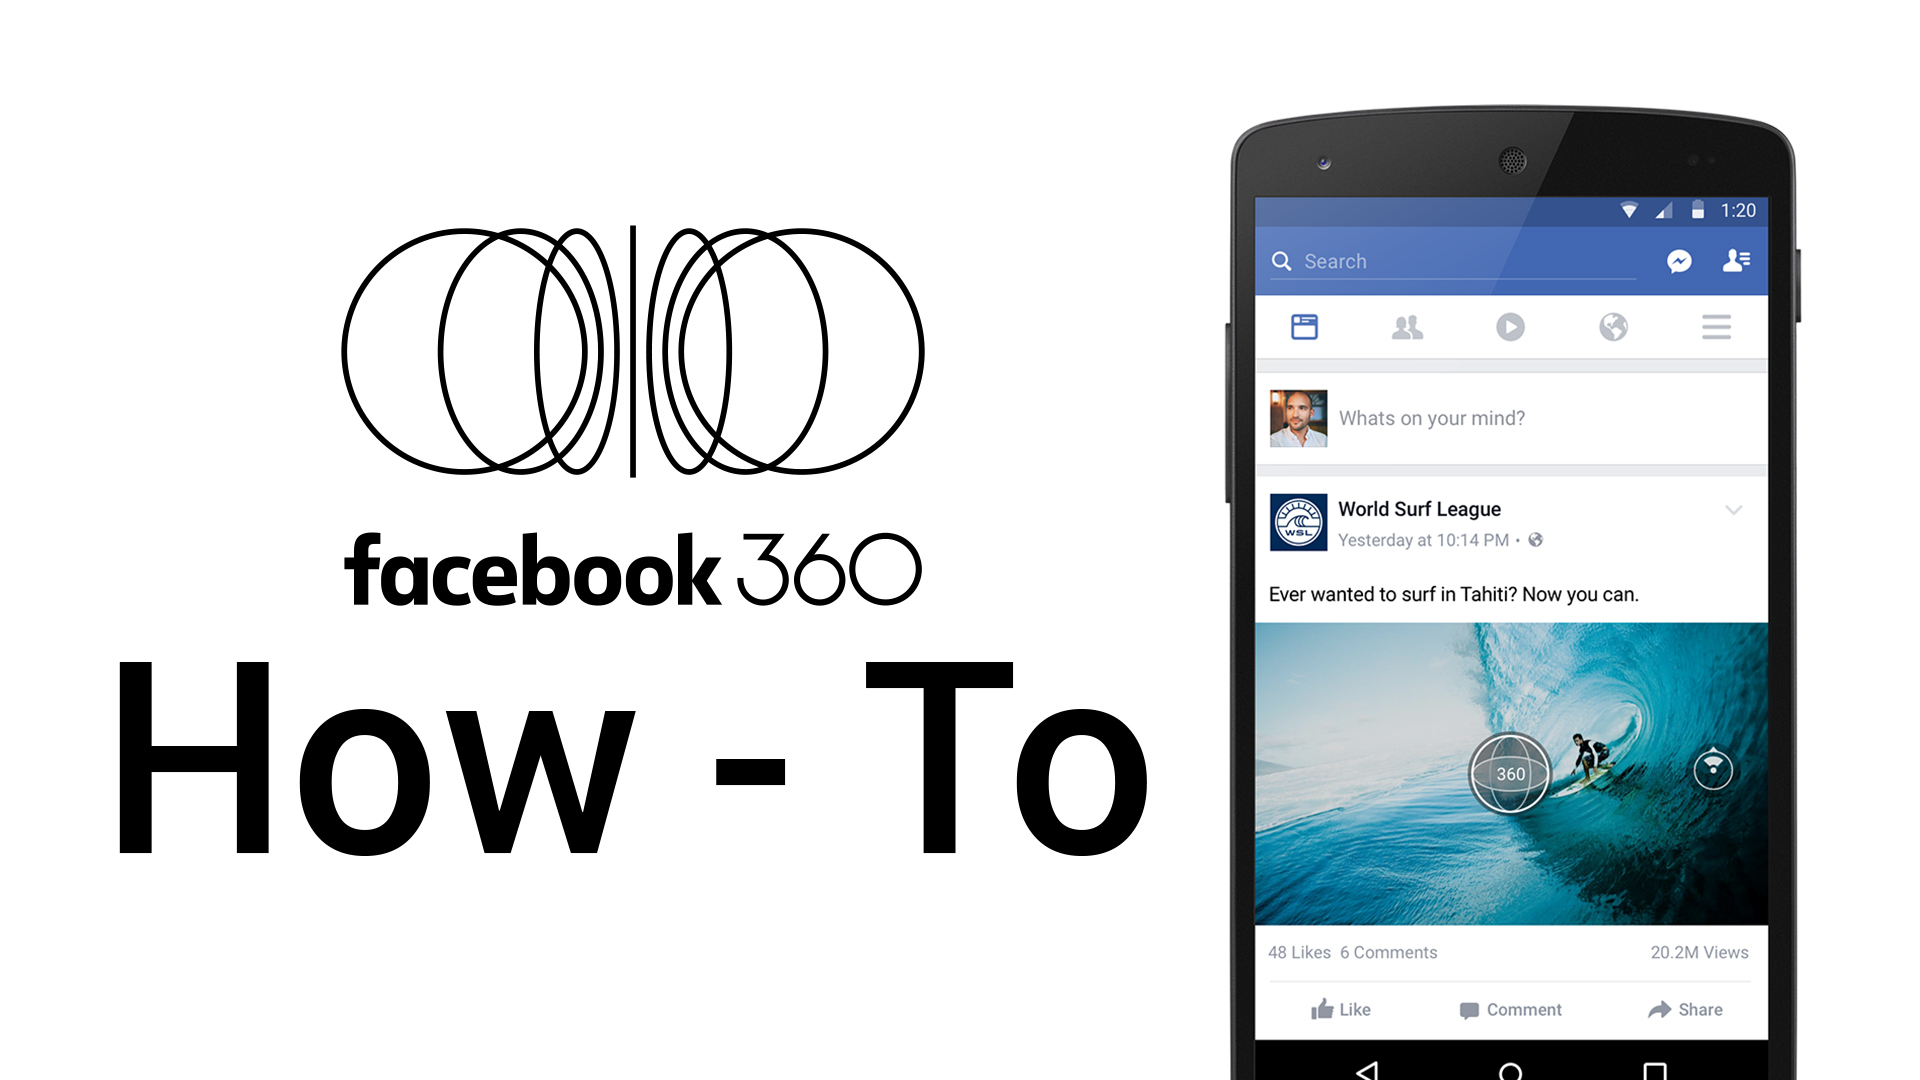 วิธีถ่ายภาพ 360 องศาอย่างละเอียดลง Facebook ใคร ๆ ก็ทำได้ด้วยสมาร์ทโฟน